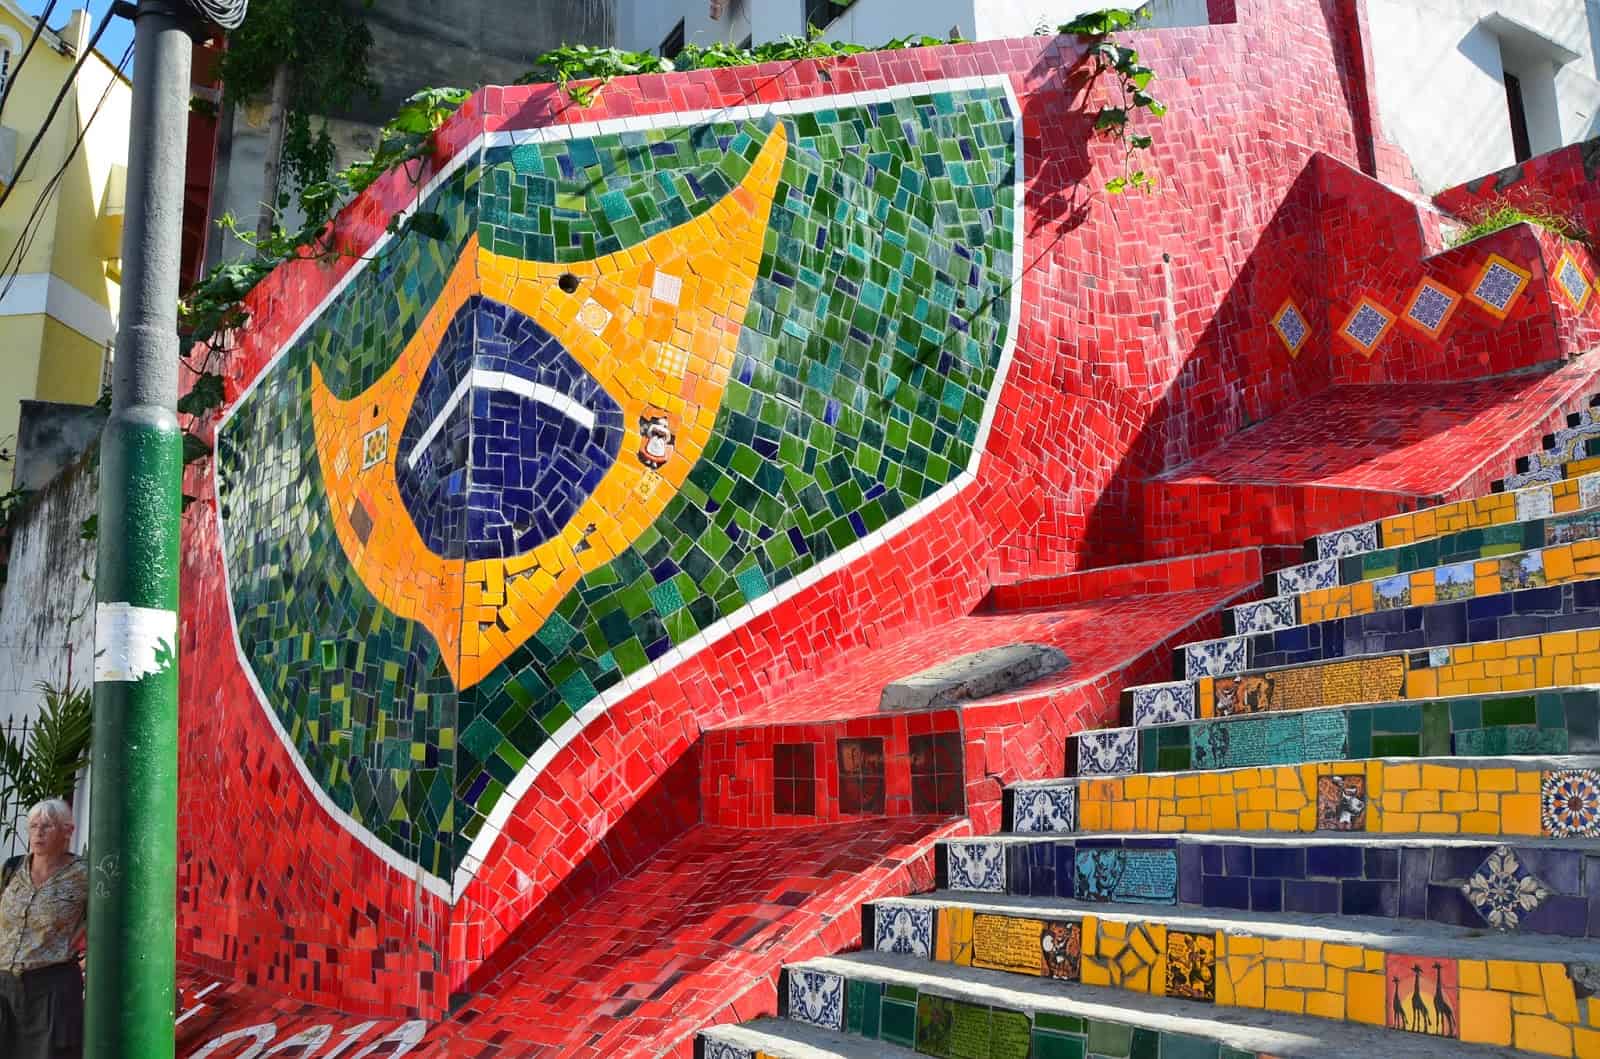 Brazilian flag tiles at Escadaria Selarón in Rio de Janeiro, Brazil